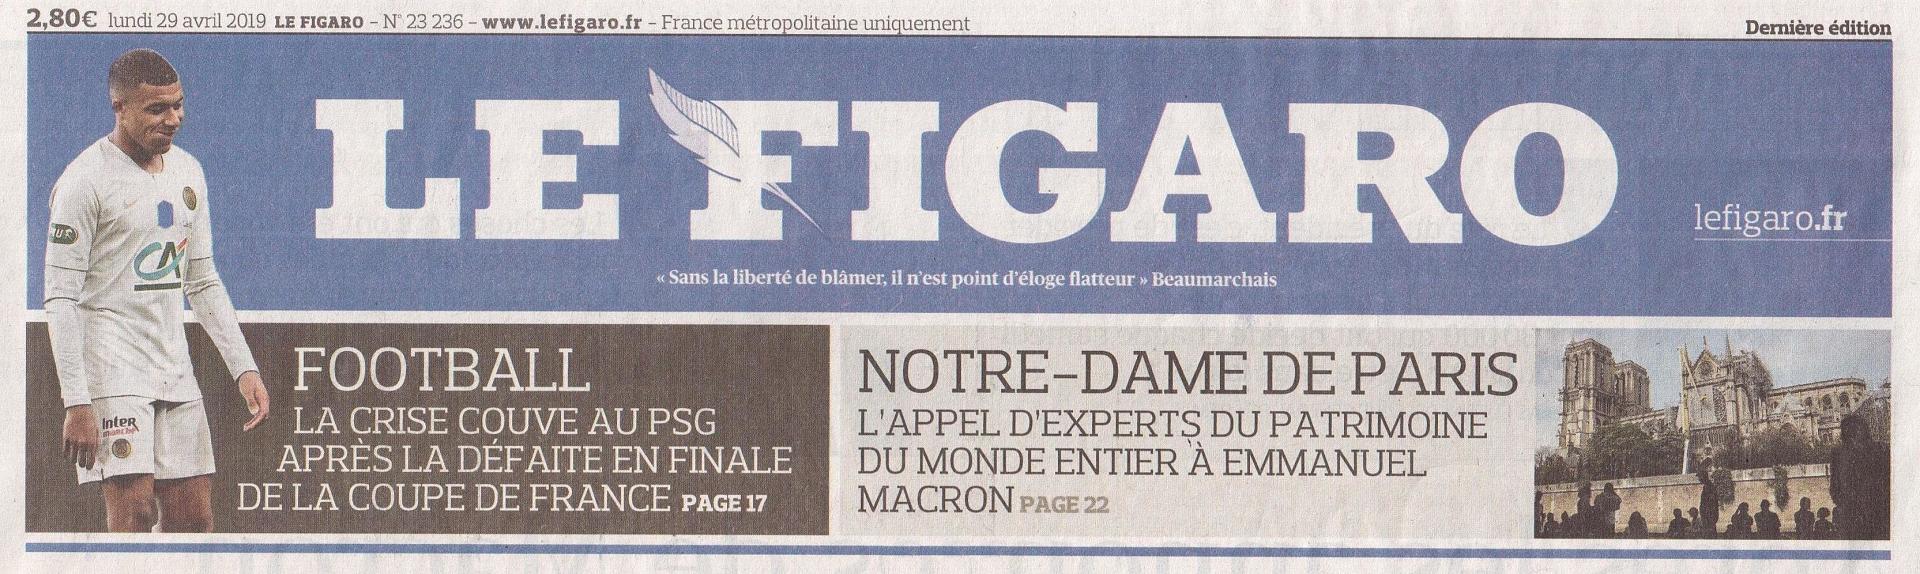 Le Figaro (Une) Appel de Notre-Dame